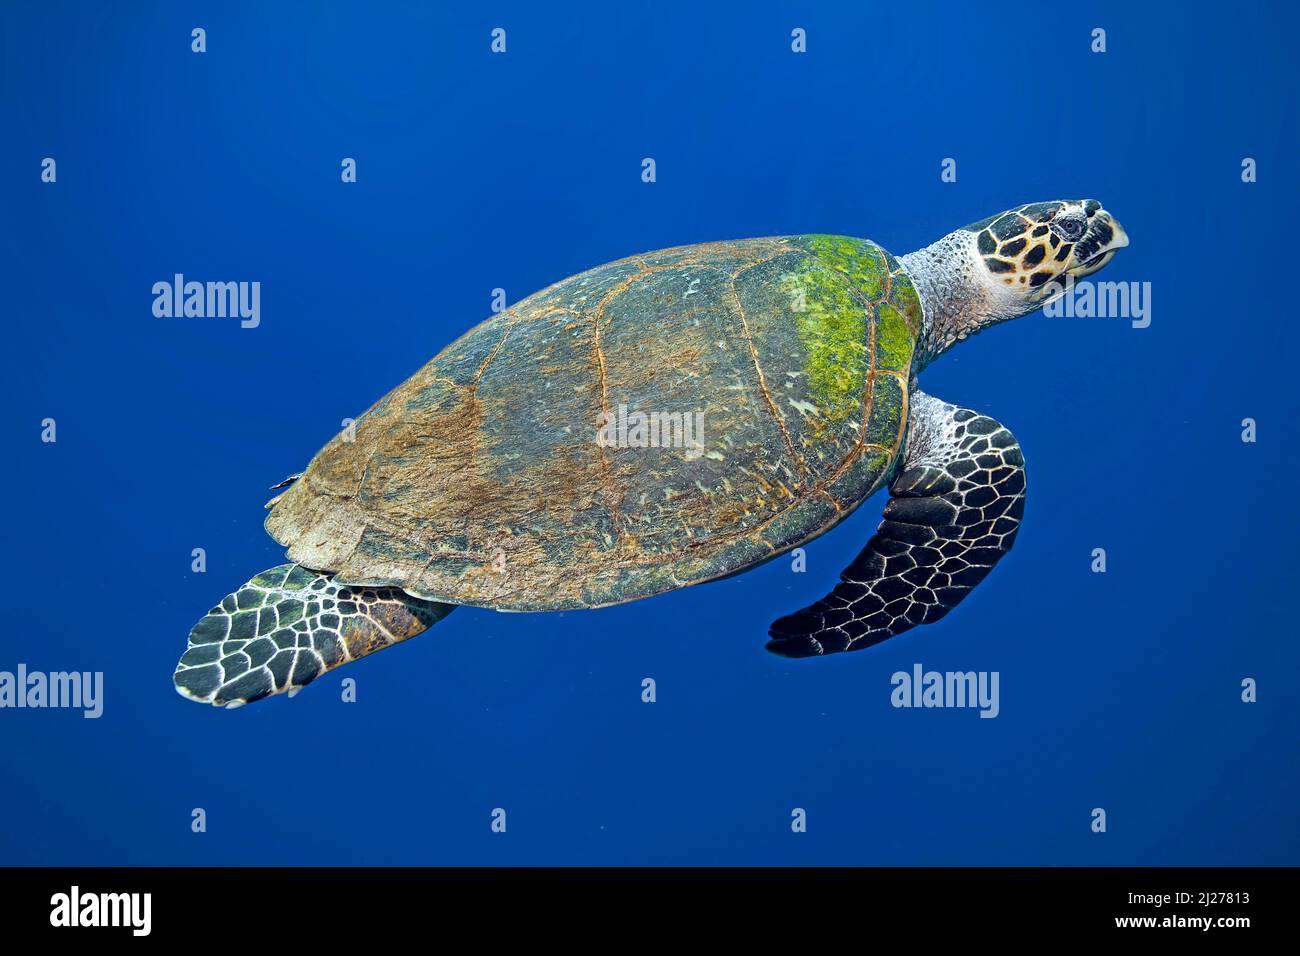 Karettschildkröte (Eretmochelys imbricata) Schwimmen im blauen Wasser, Marsa Alam, Ägypten Stockfoto